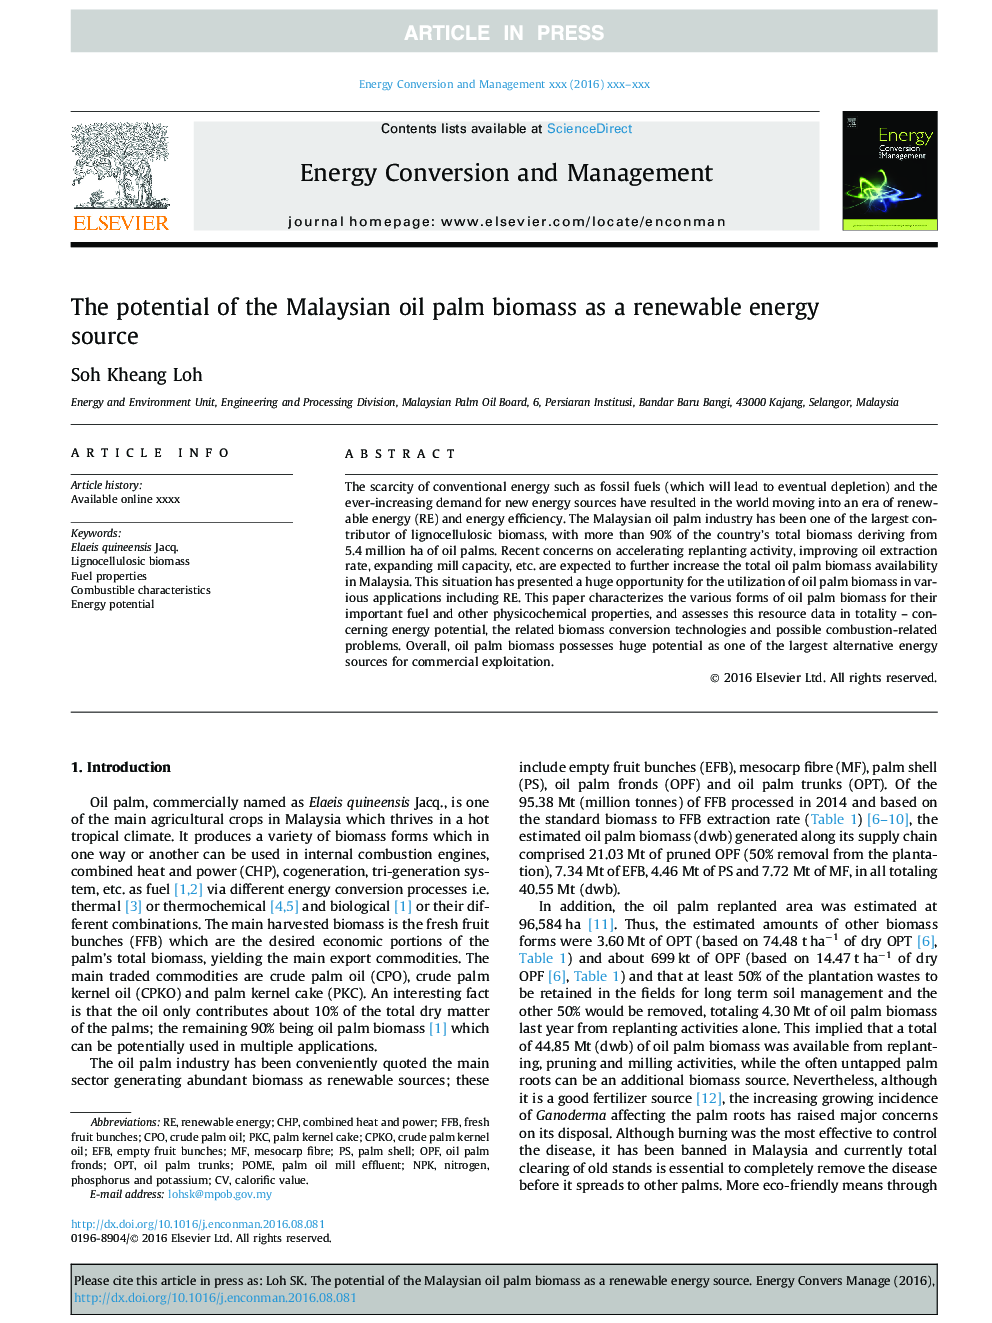 پتانسیل بیوماس نخل نفت مالزی به عنوان یک منبع انرژی تجدید پذیر 